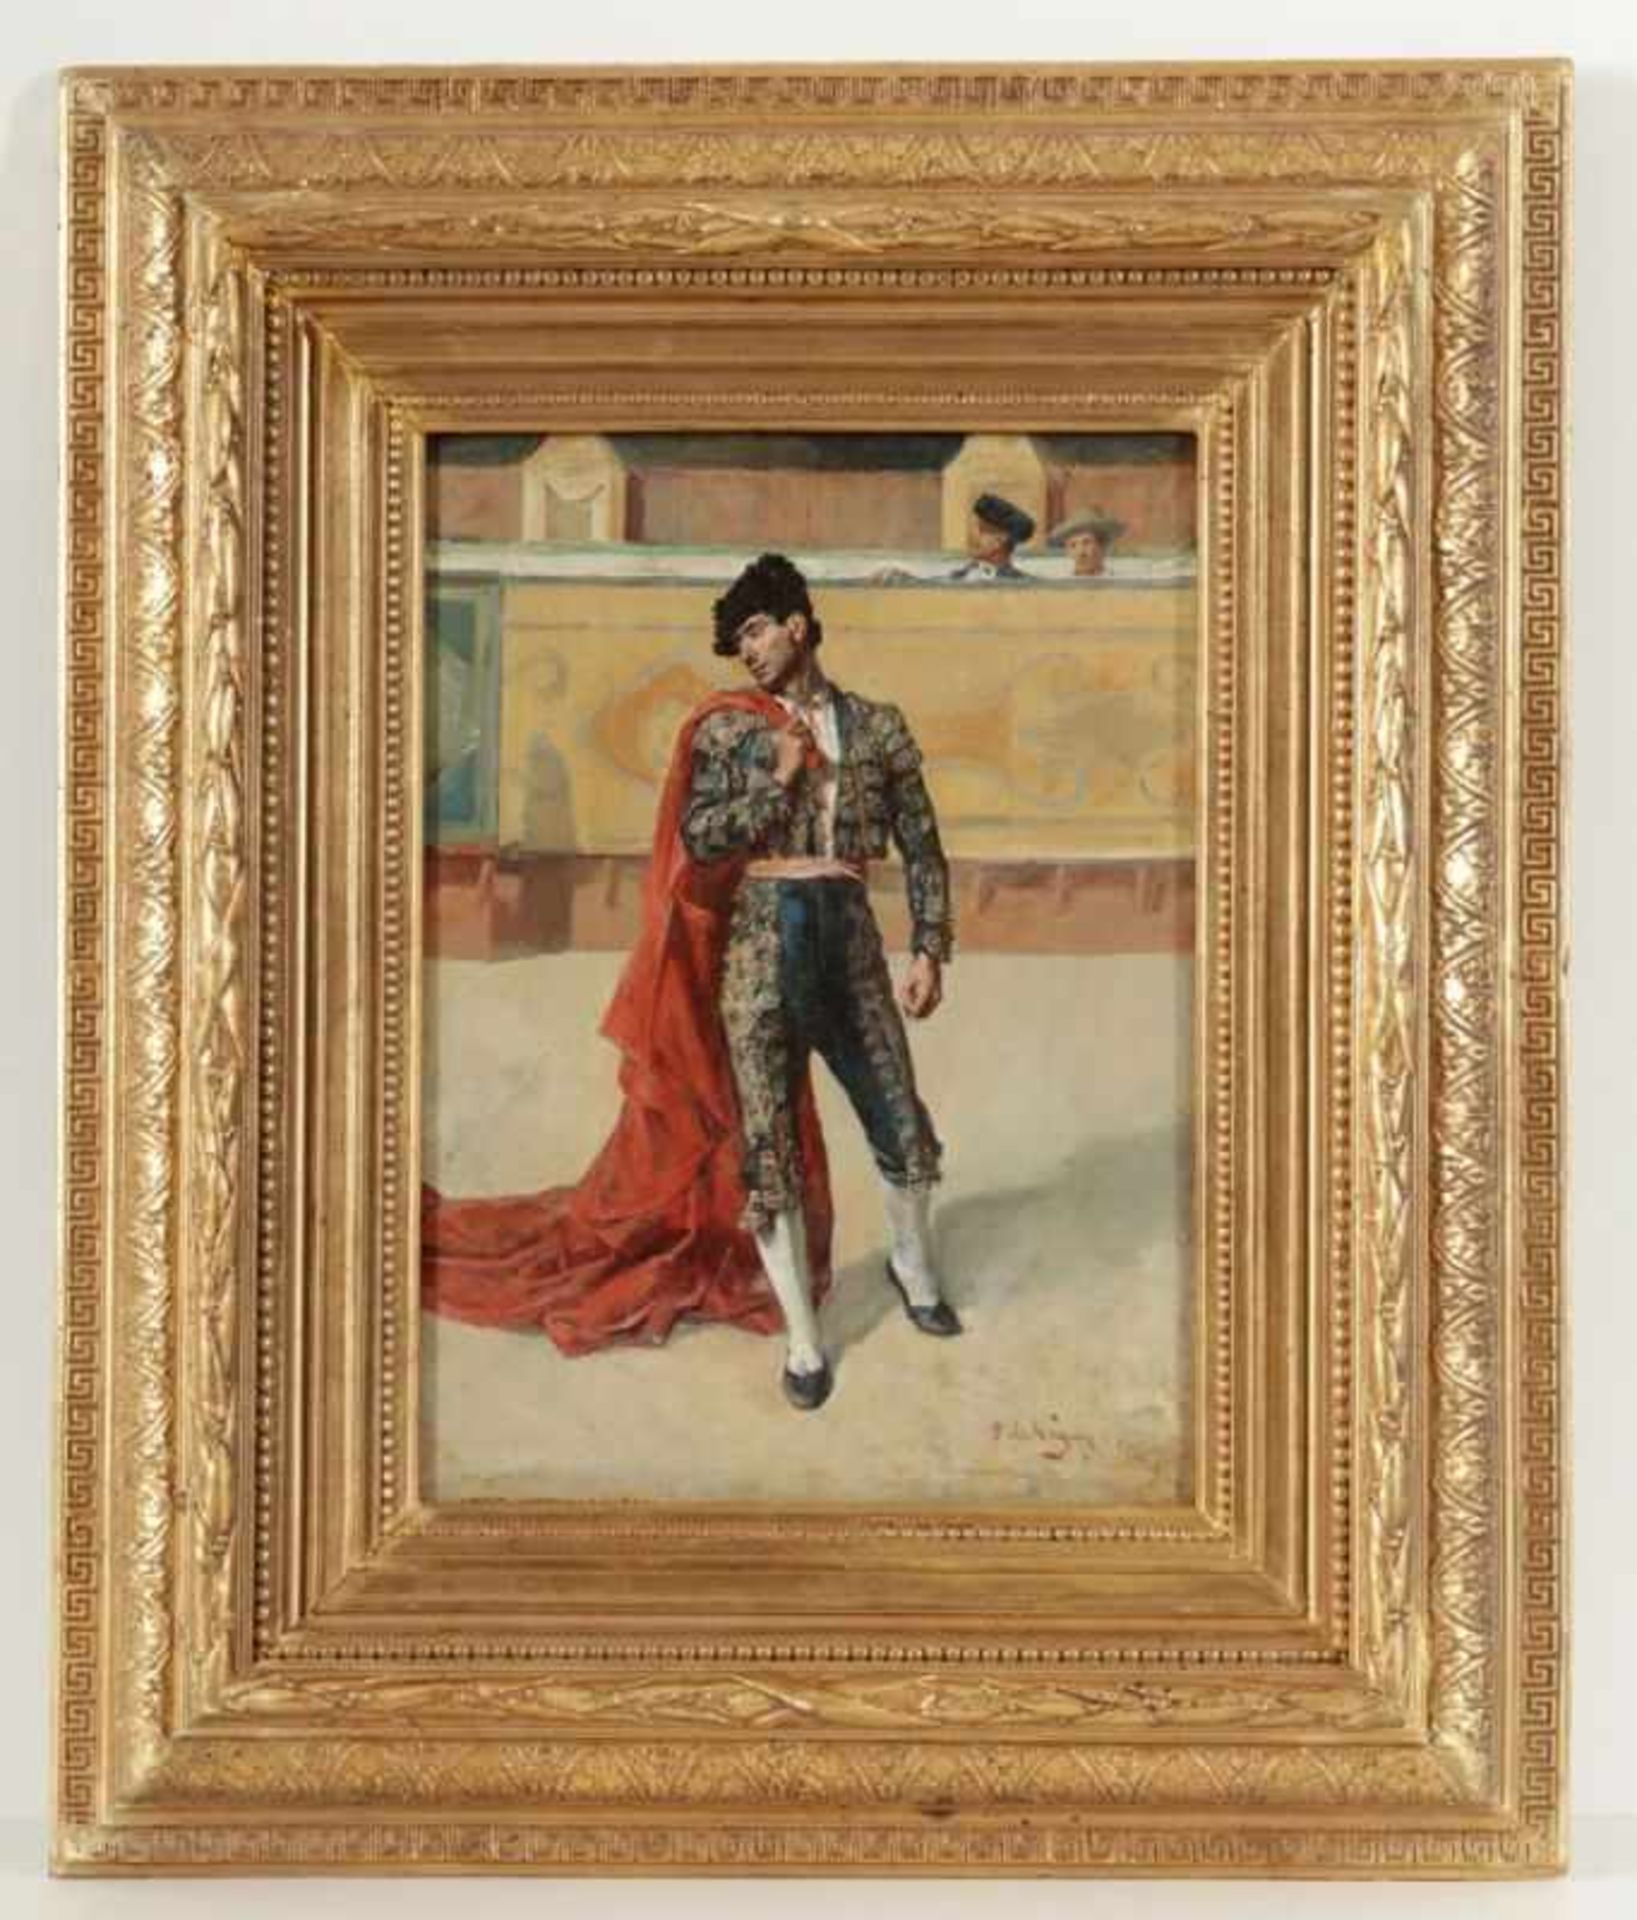 Pedro vega y Munoz1840 - 1882 Spanien - Stierkämpfer/Torero in einer Arena - Öl/Holz. 32 x 23 cm. - Bild 2 aus 2